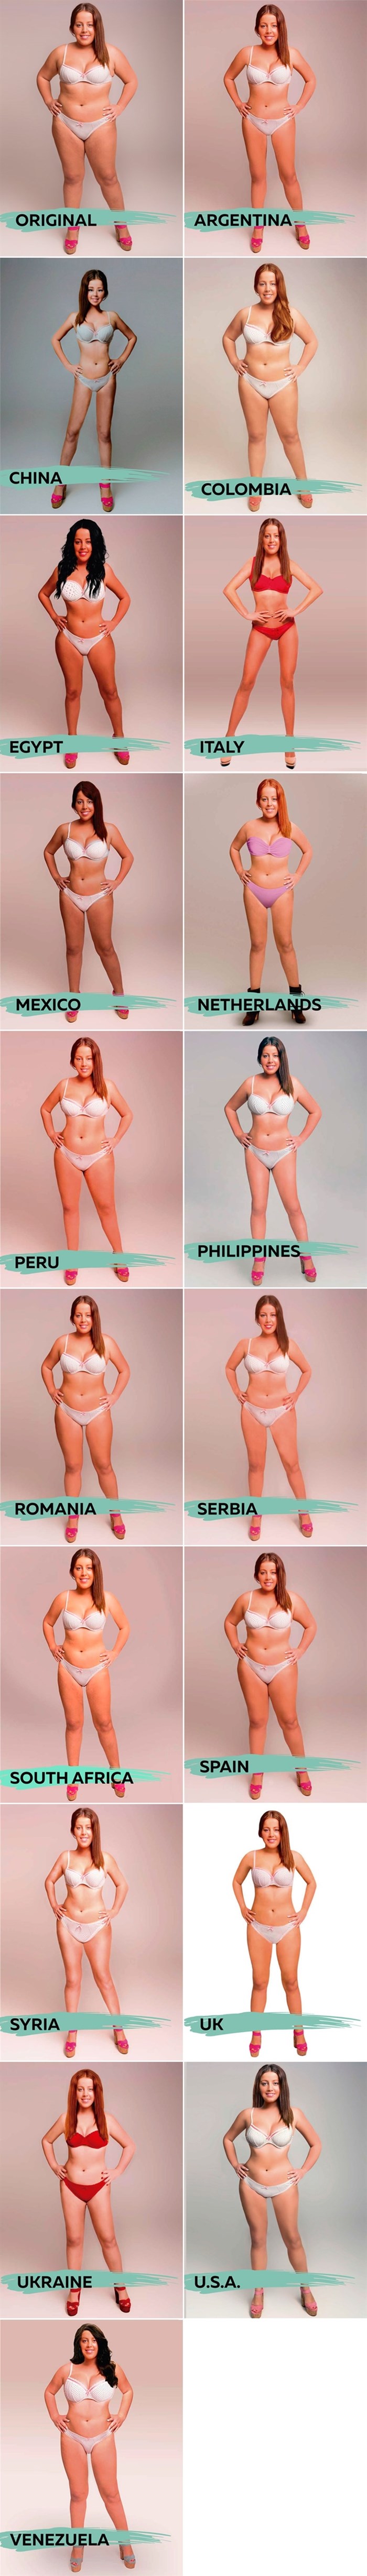 Razne države svijeta fotošopirale djevojku i pokazale kakvo žensko tijelo preferiraju